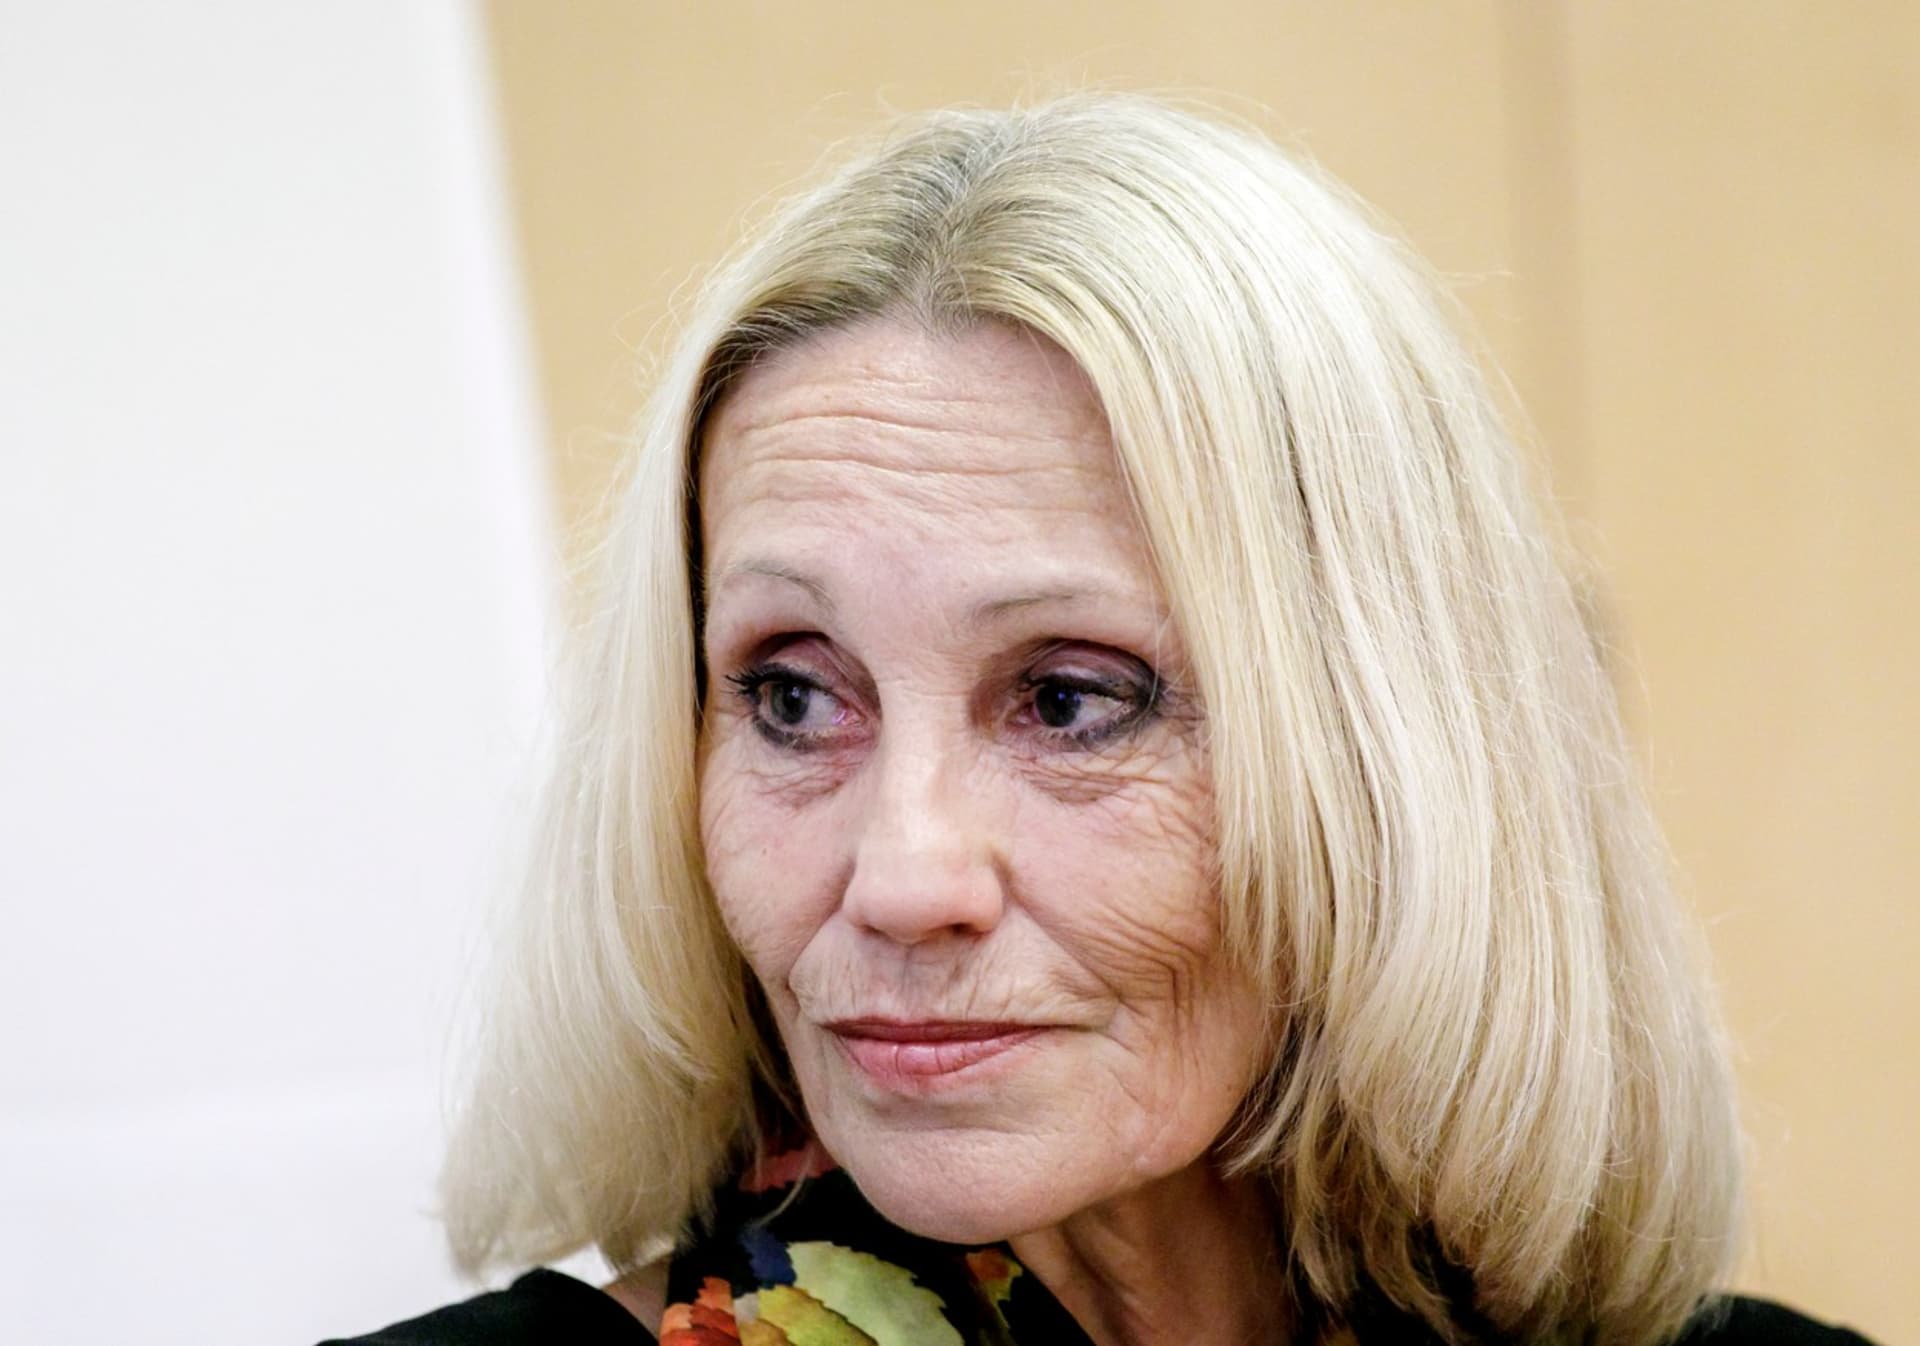 Dokumentaristka a režisérka Olga Sommerová by mohla v Poslanecké sněmovně nahradit Dominika Feriho.